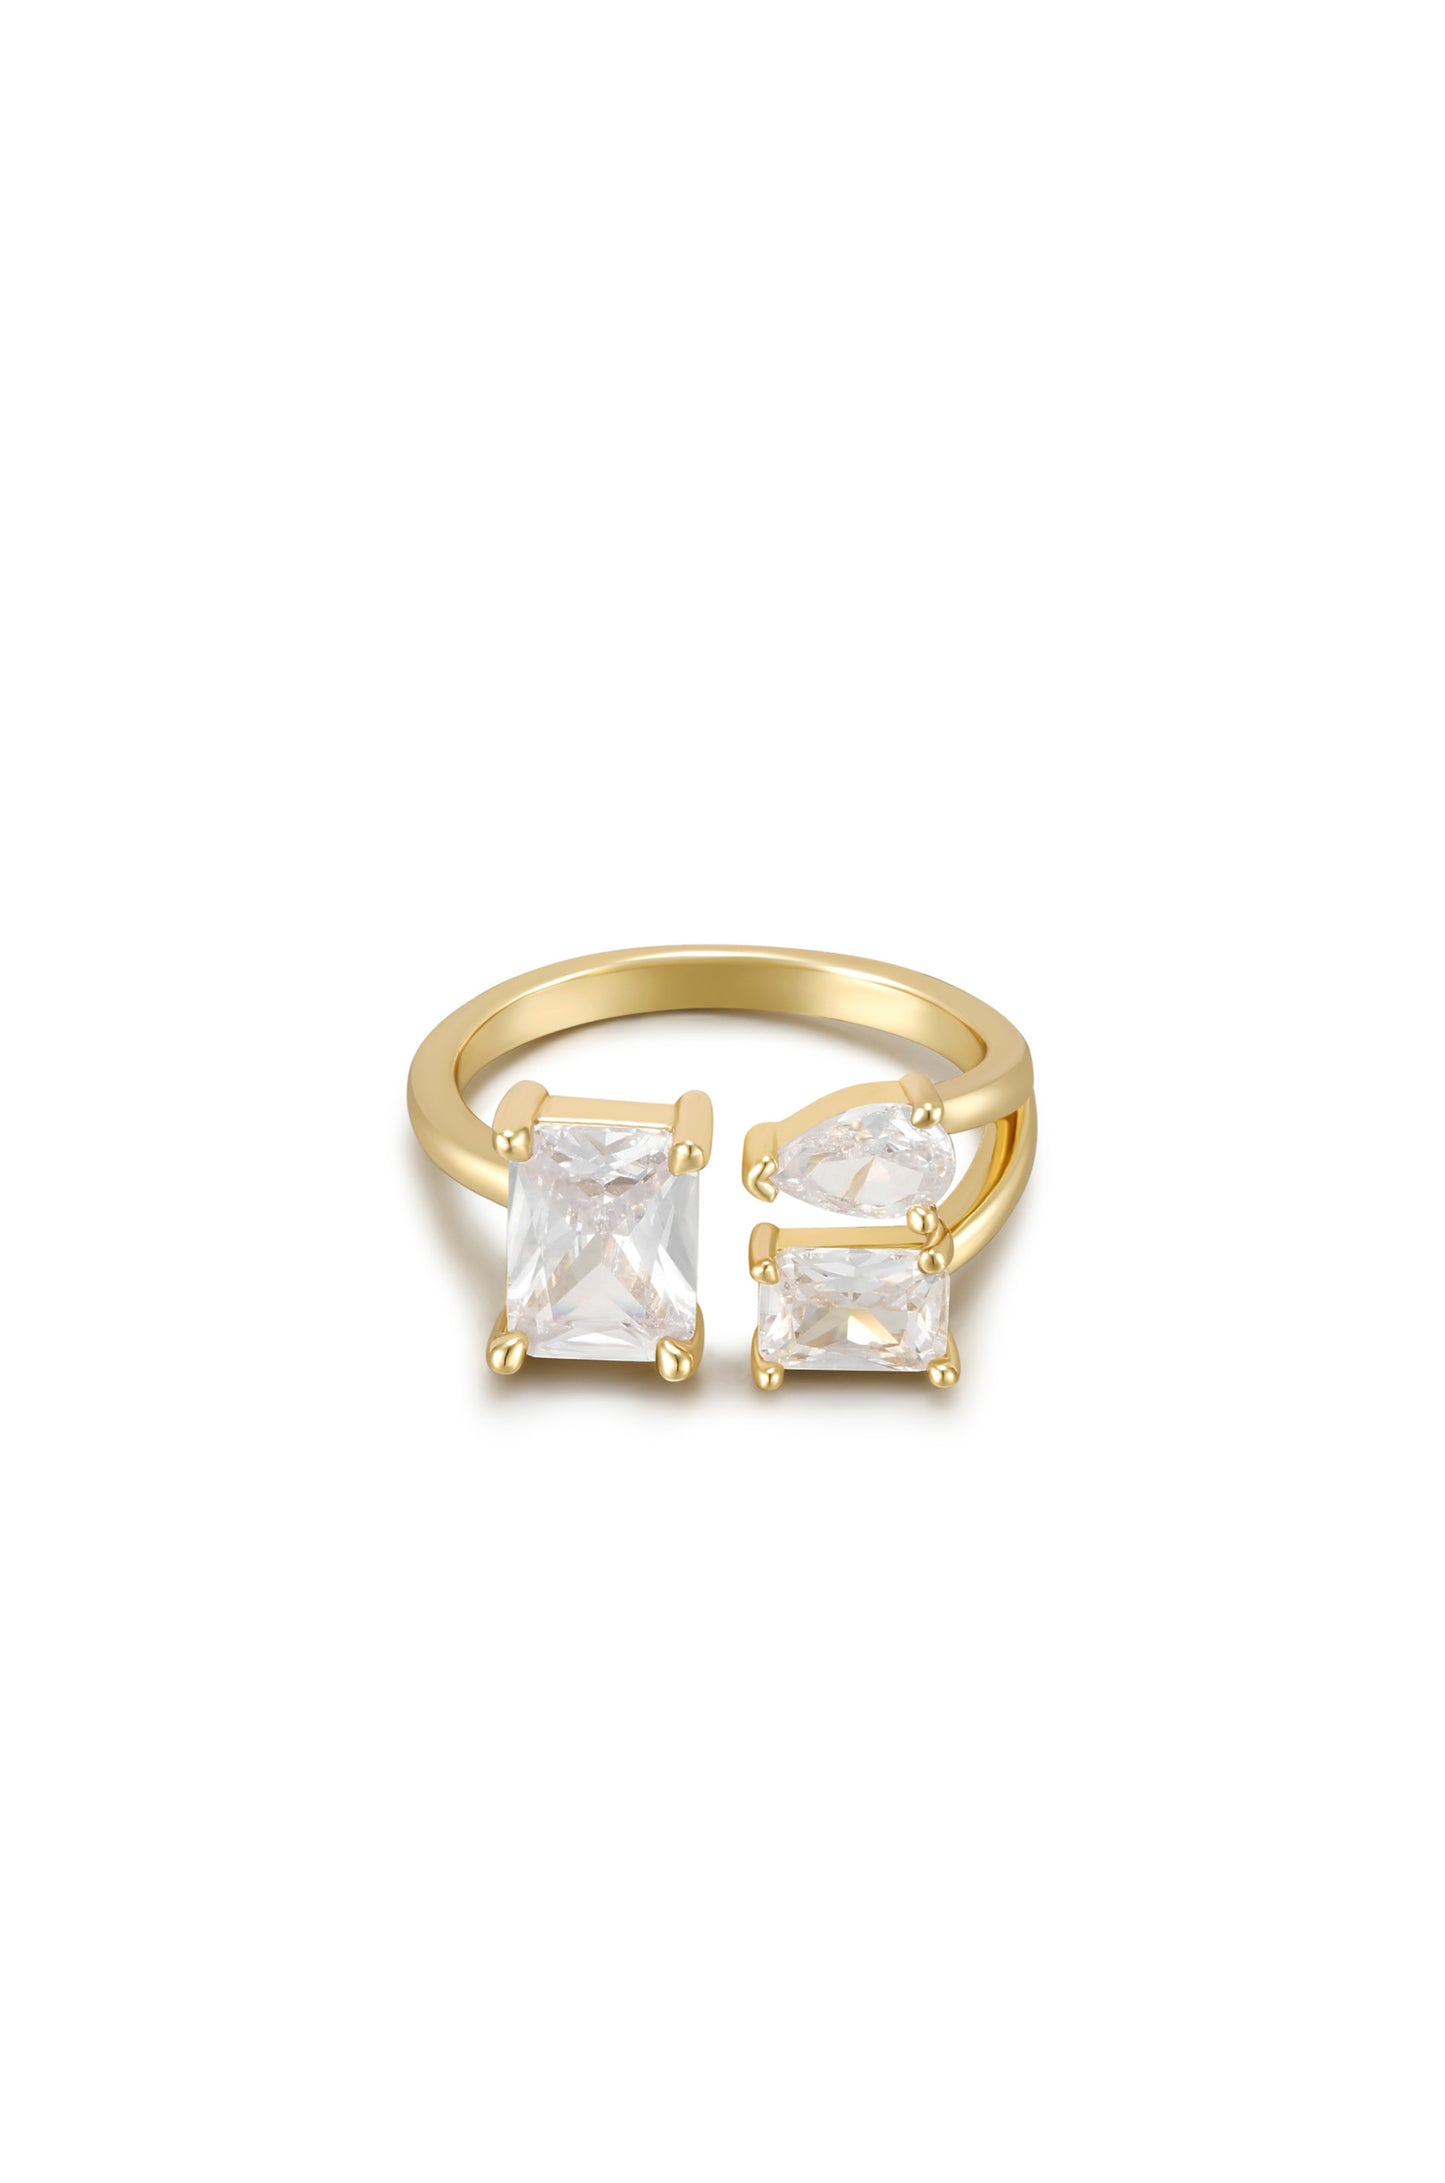 Together Crystal 18k Gold Plated Adjustable Ring